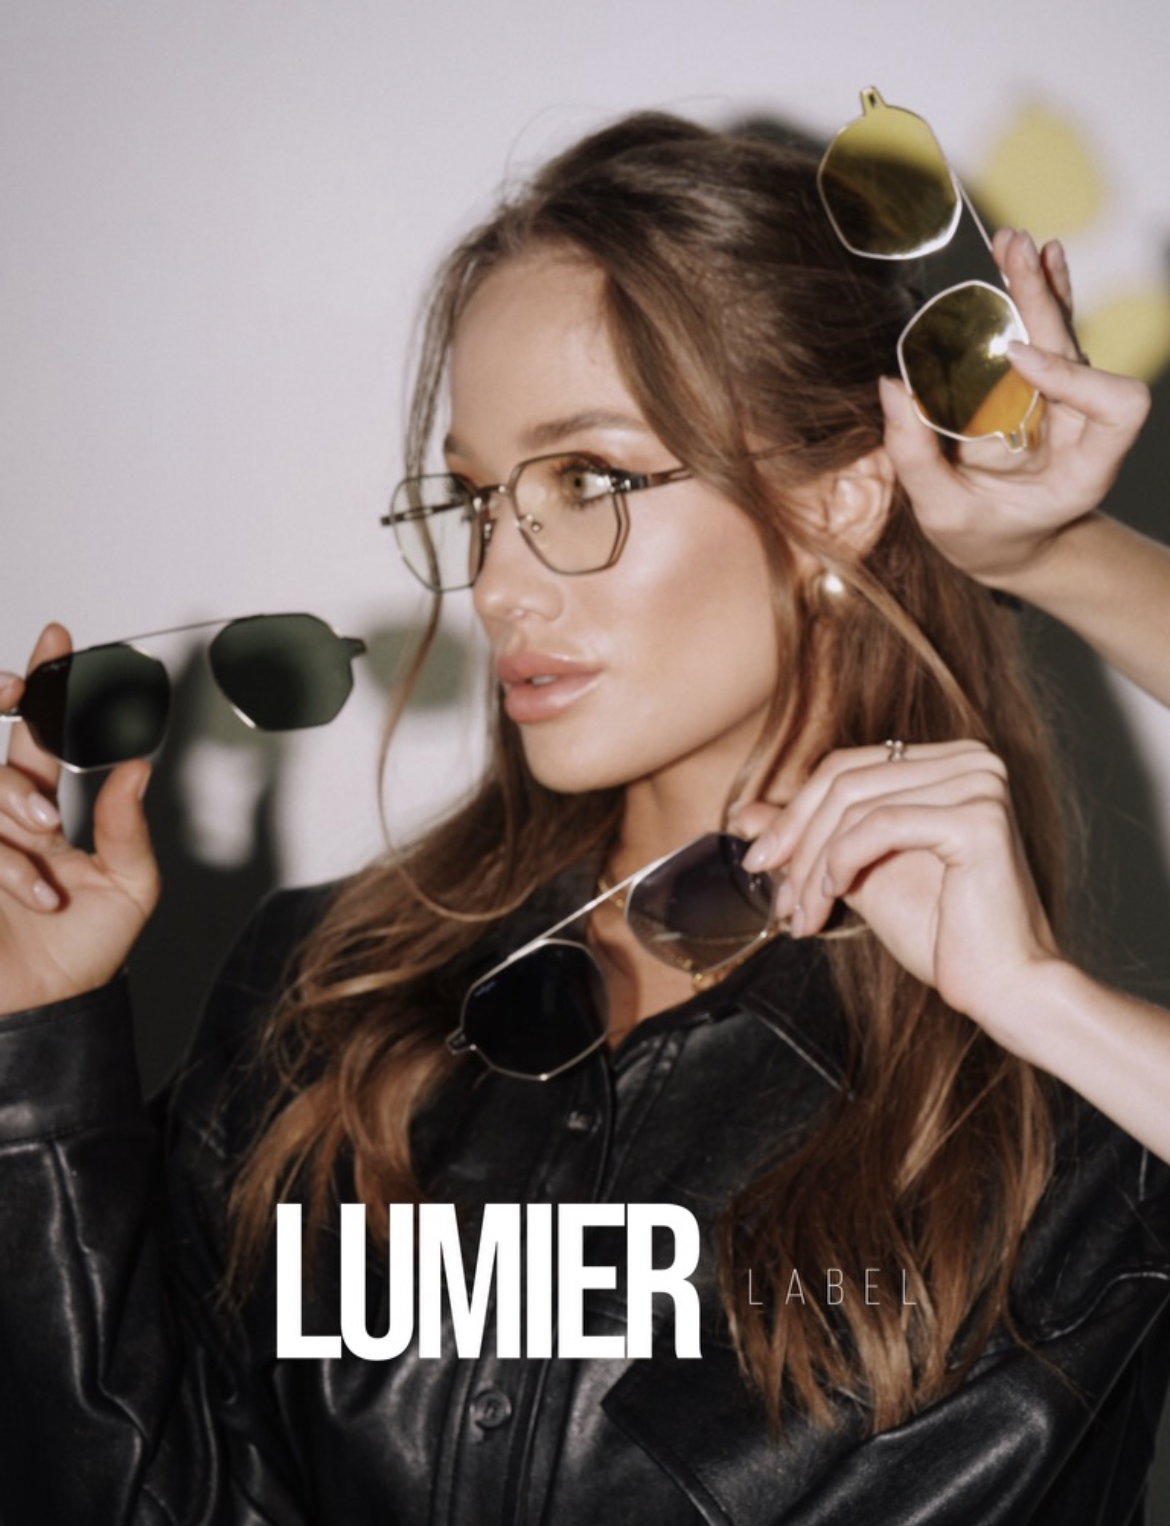 Lumier Label thumbnail